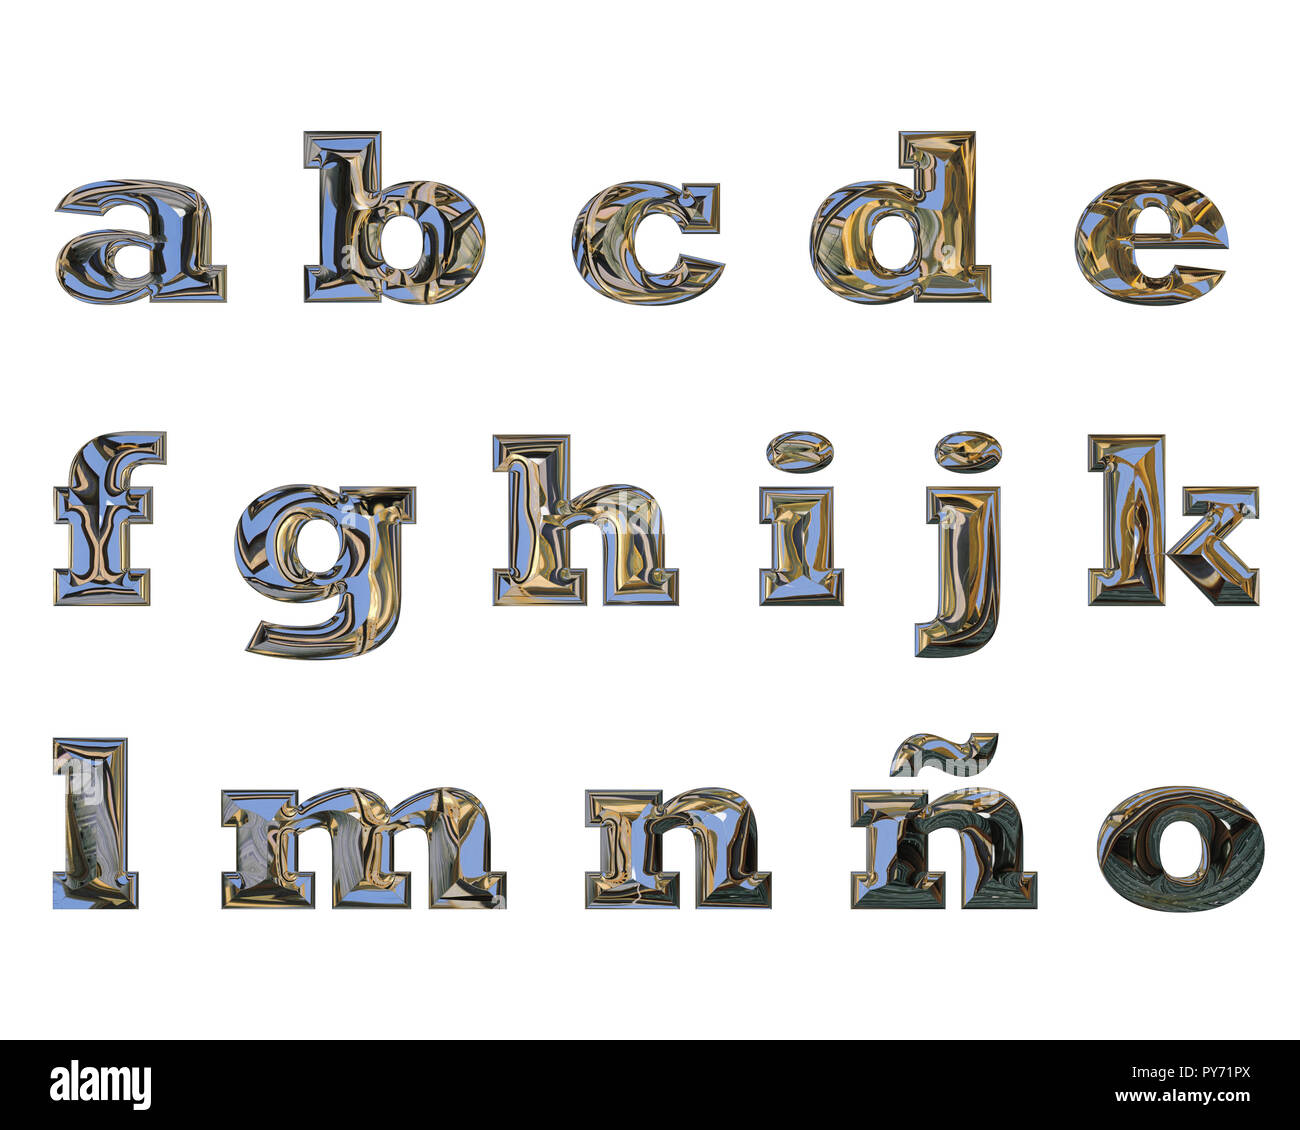 Le lettere minuscole da 'a' a 'o', fatta di liquido con effetto cromato Foto Stock